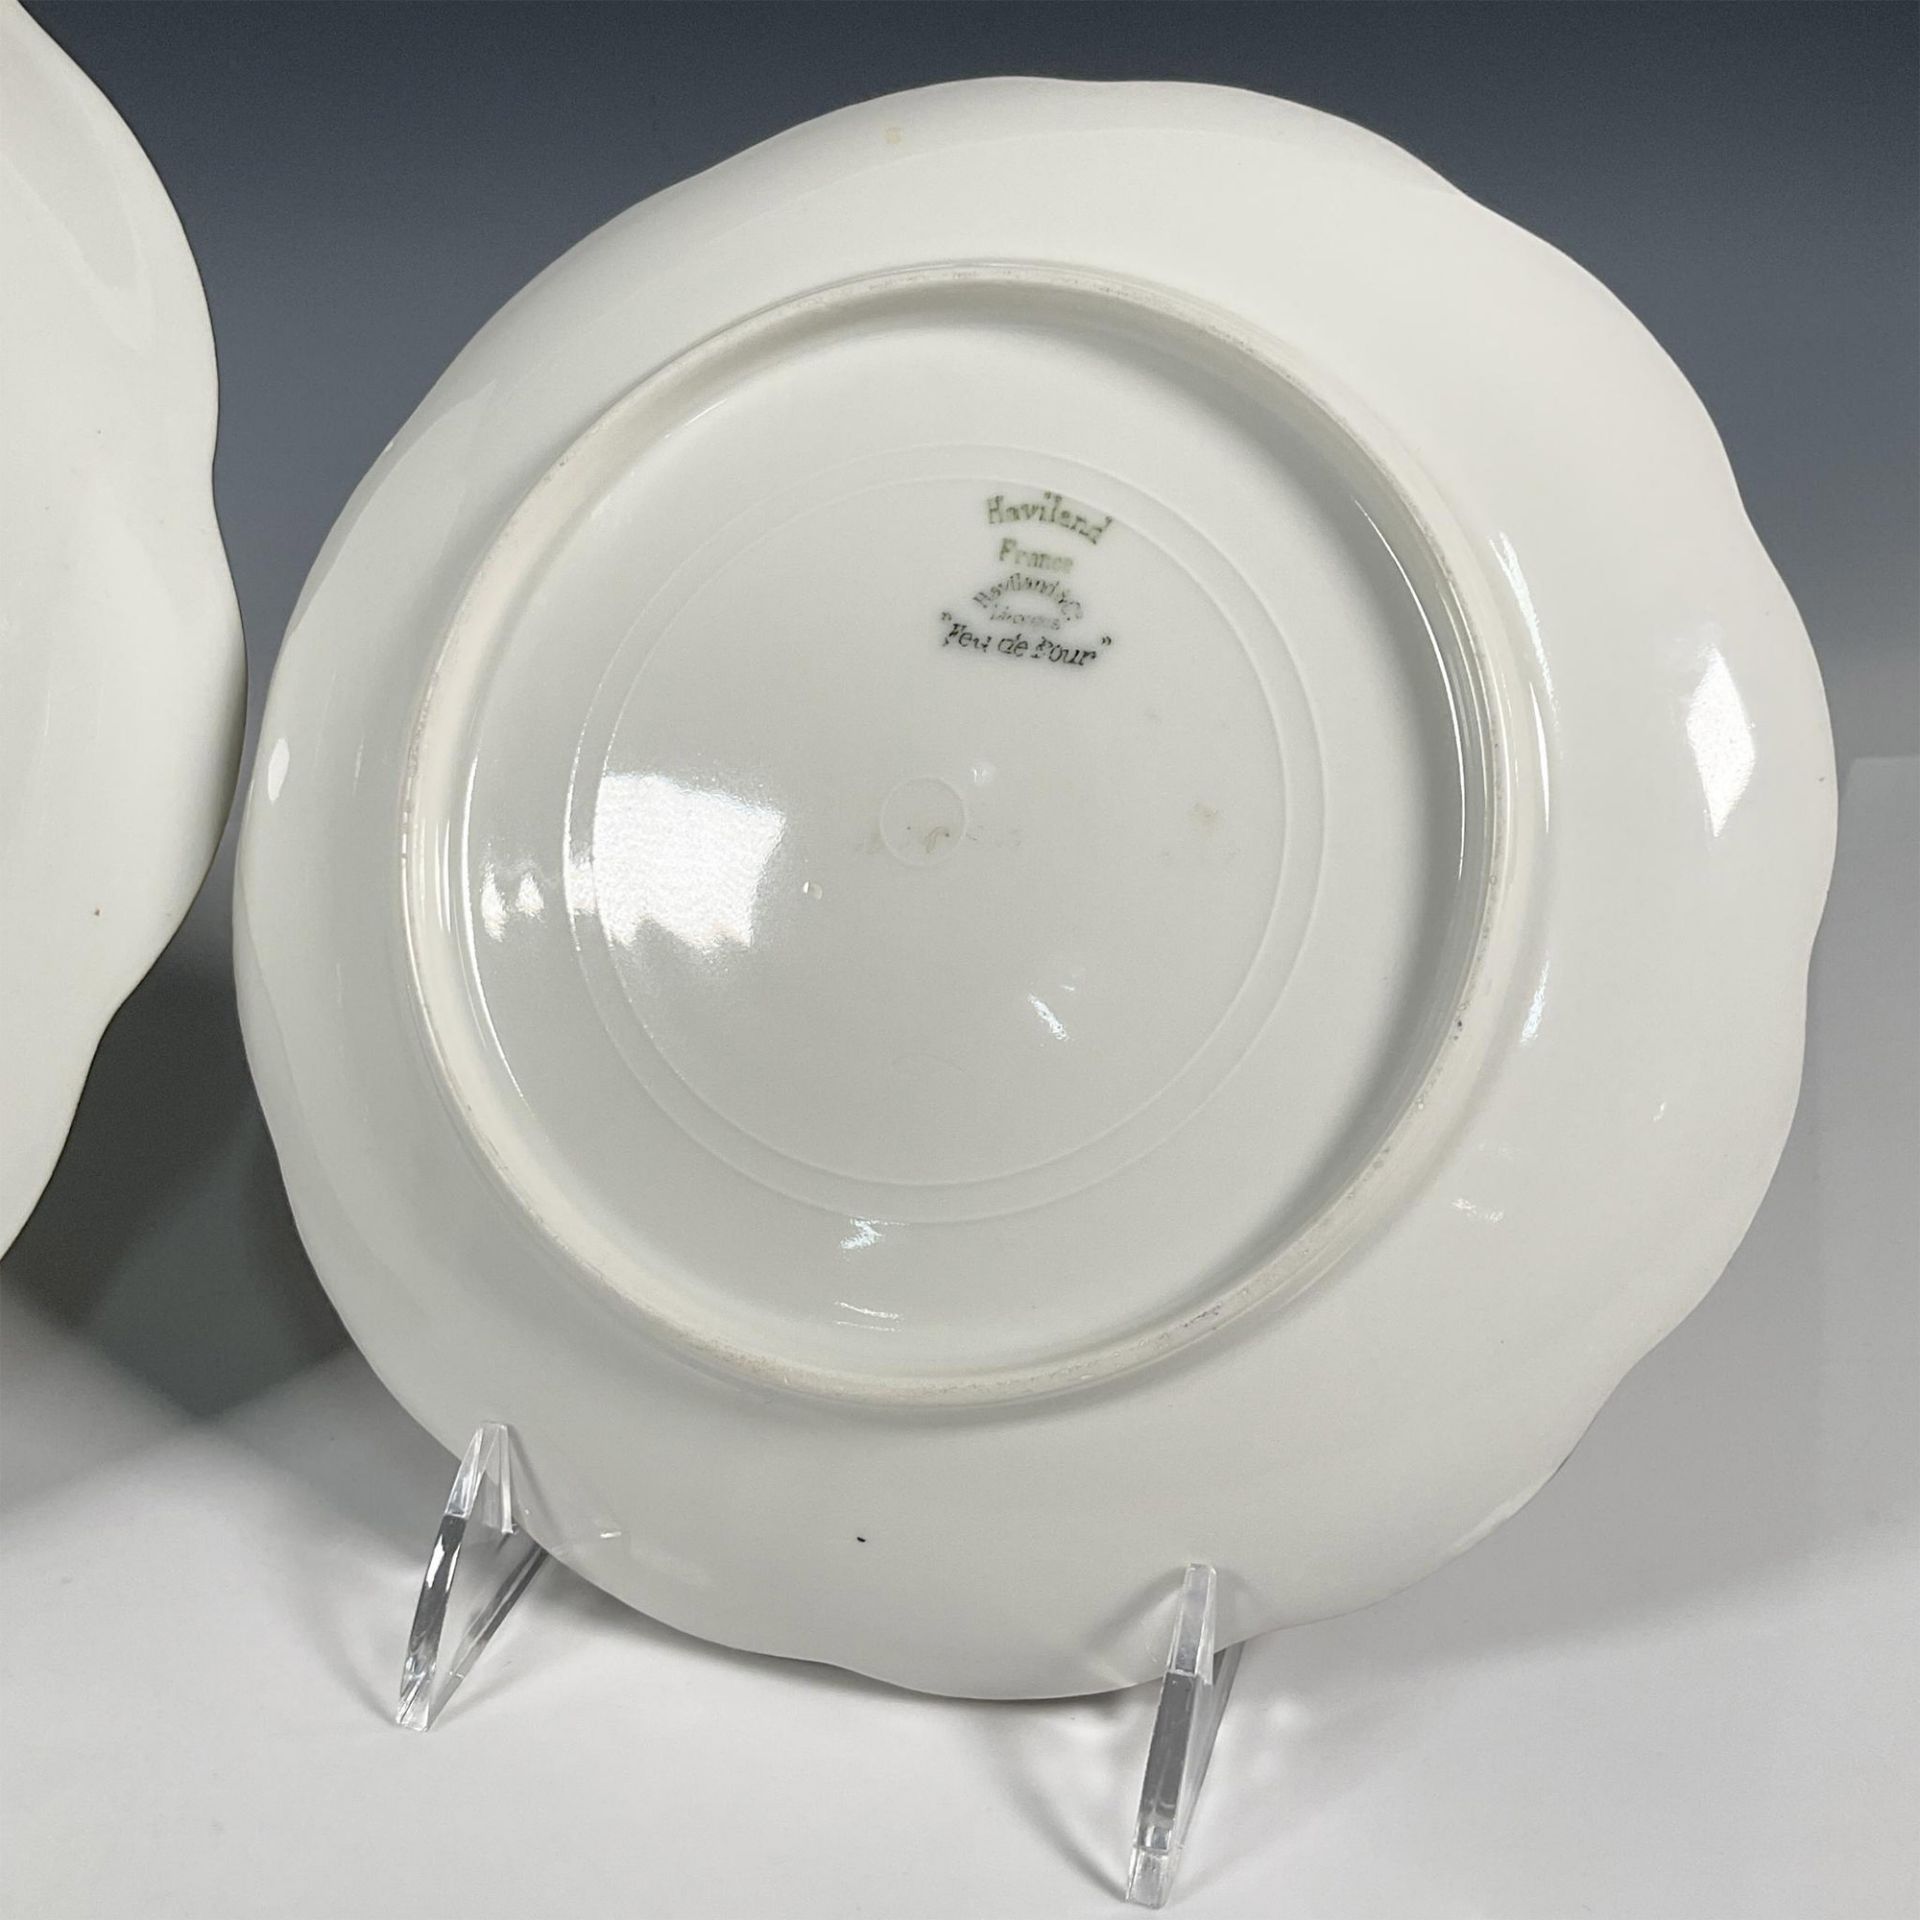 2pc Haviland & Co. Decorative Limoges Plates, Dandelions - Image 6 of 6